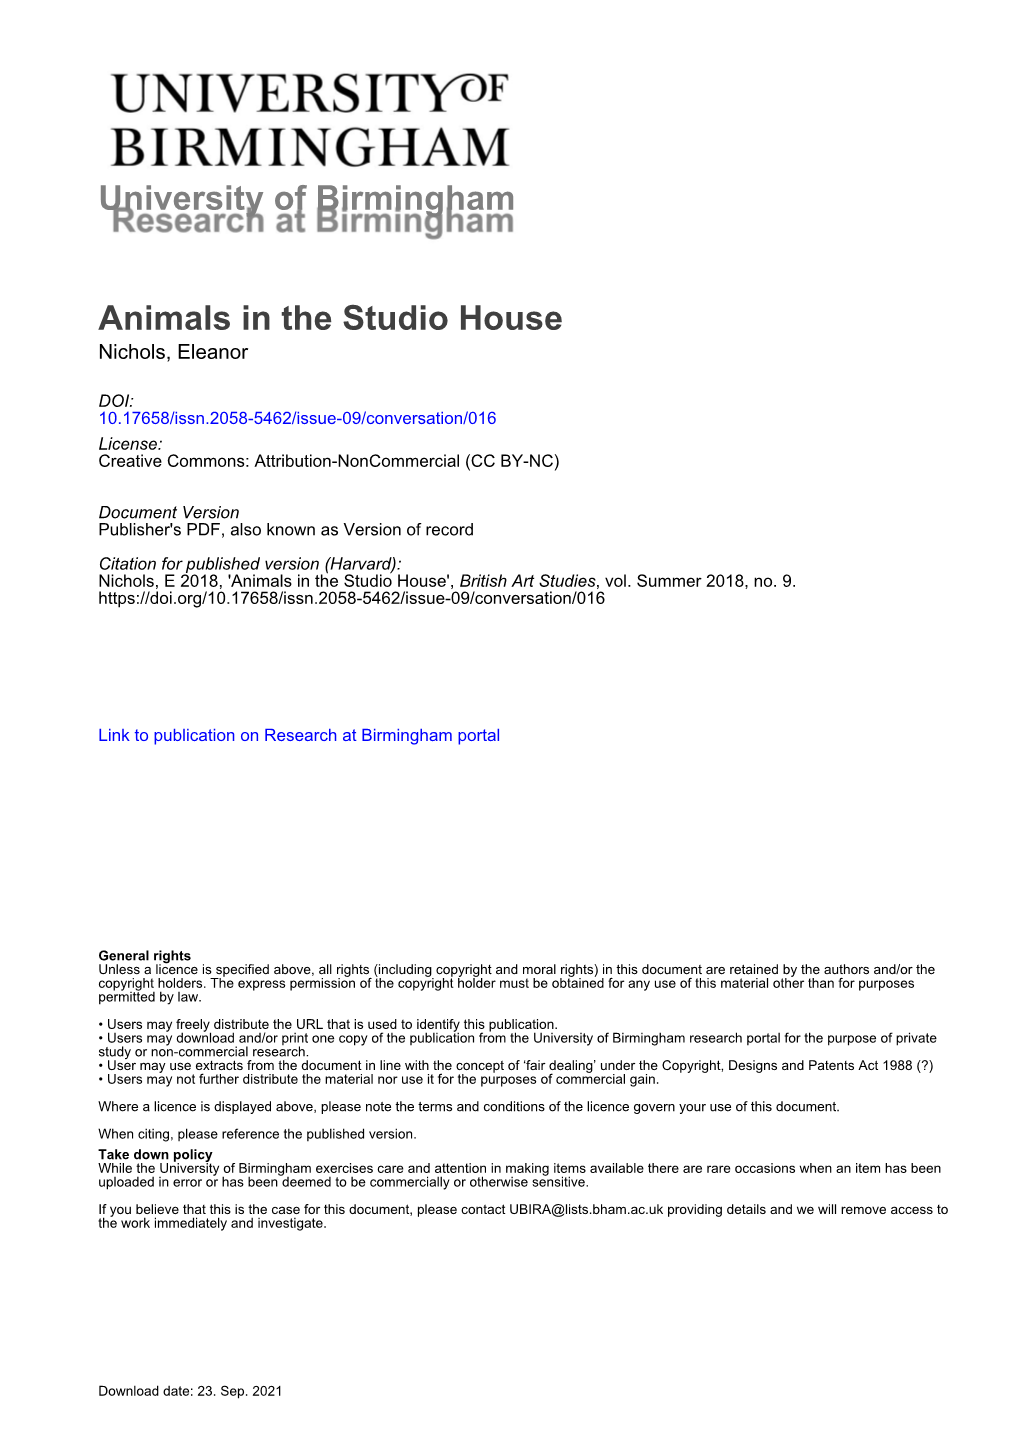 University of Birmingham Animals in the Studio House